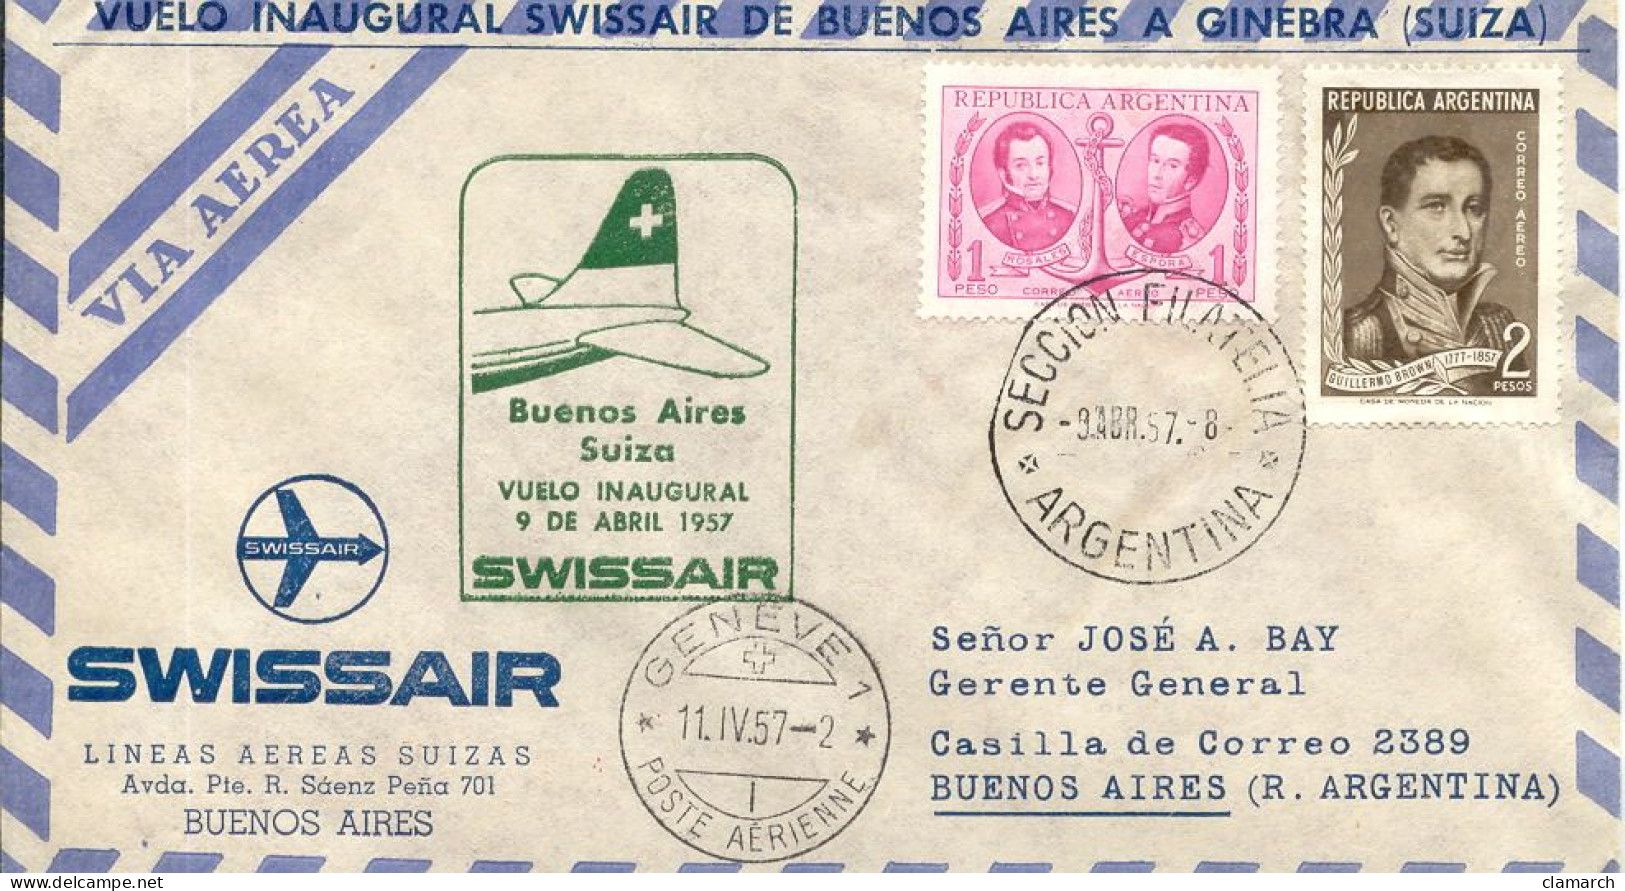 Aérophilatélie-Buenos Aires Suiza Vuelo Inaugural 9 De Abril1957 Par Swissair-cachet Seccion Filateli Du 9.4.57 - Premiers Vols